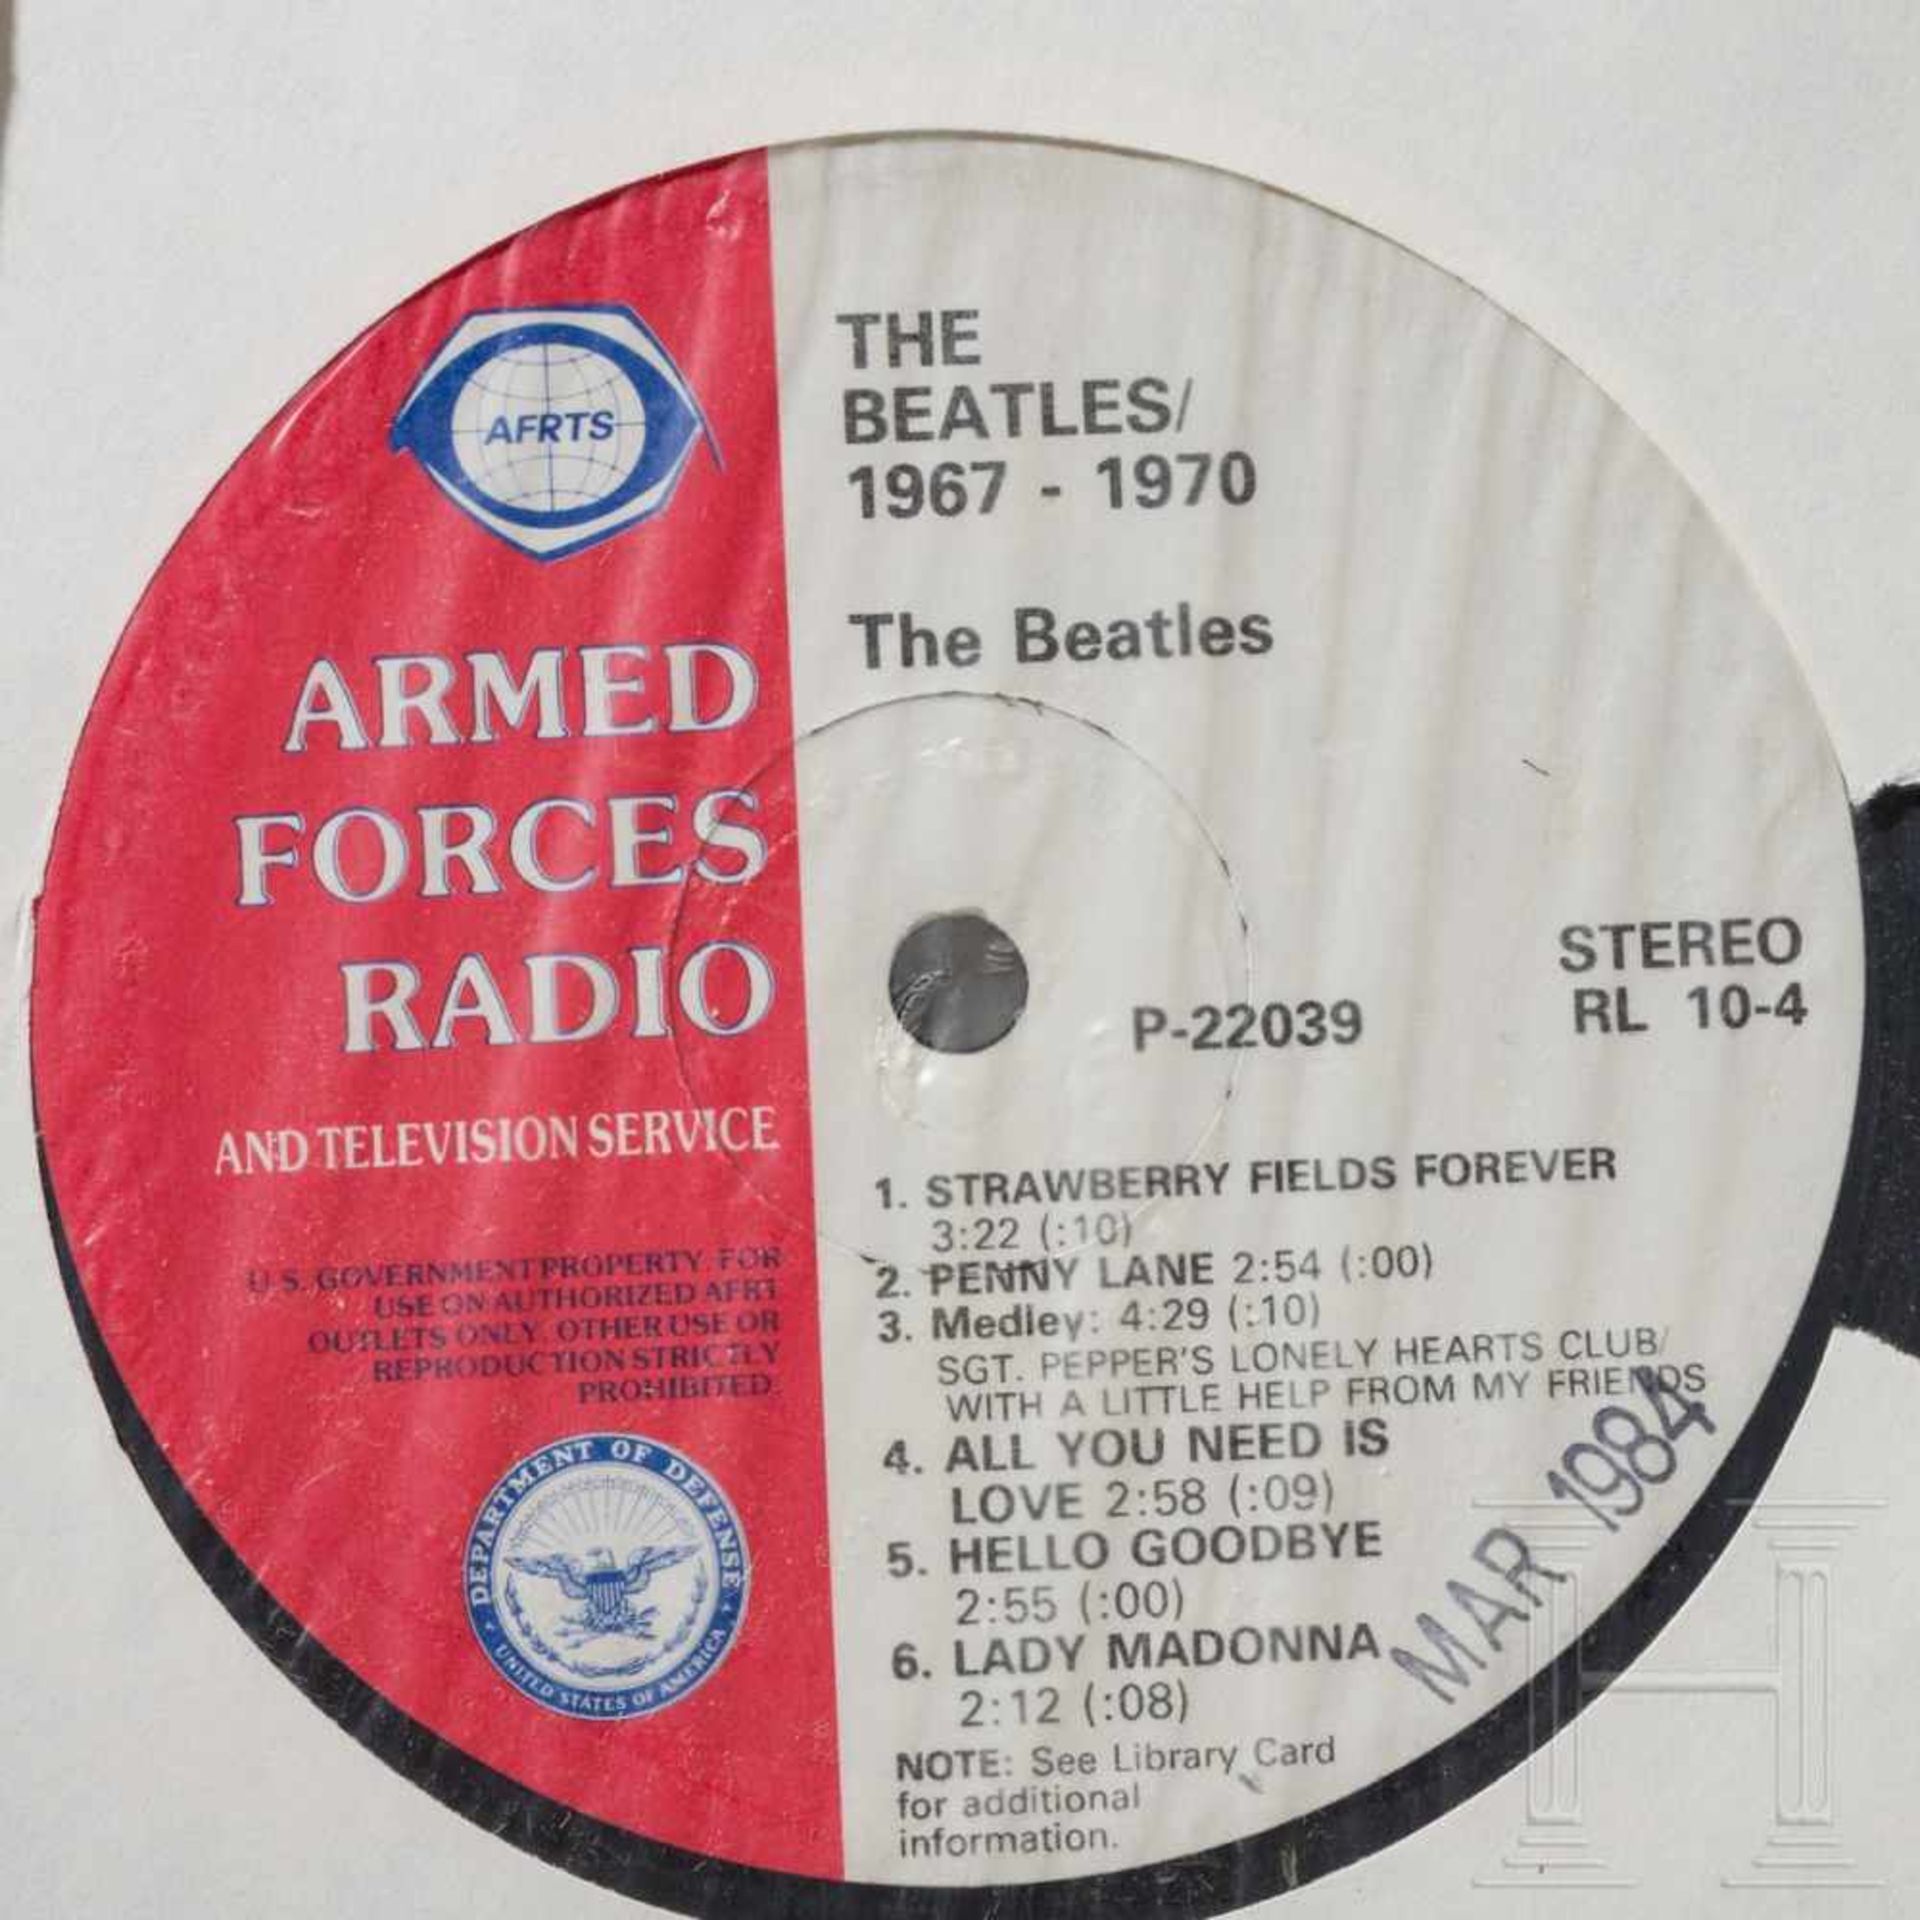 Neun Schallplatten der AFRTS (Armed Forces Radio & Television Service) - Beatles und weitere - Bild 7 aus 10